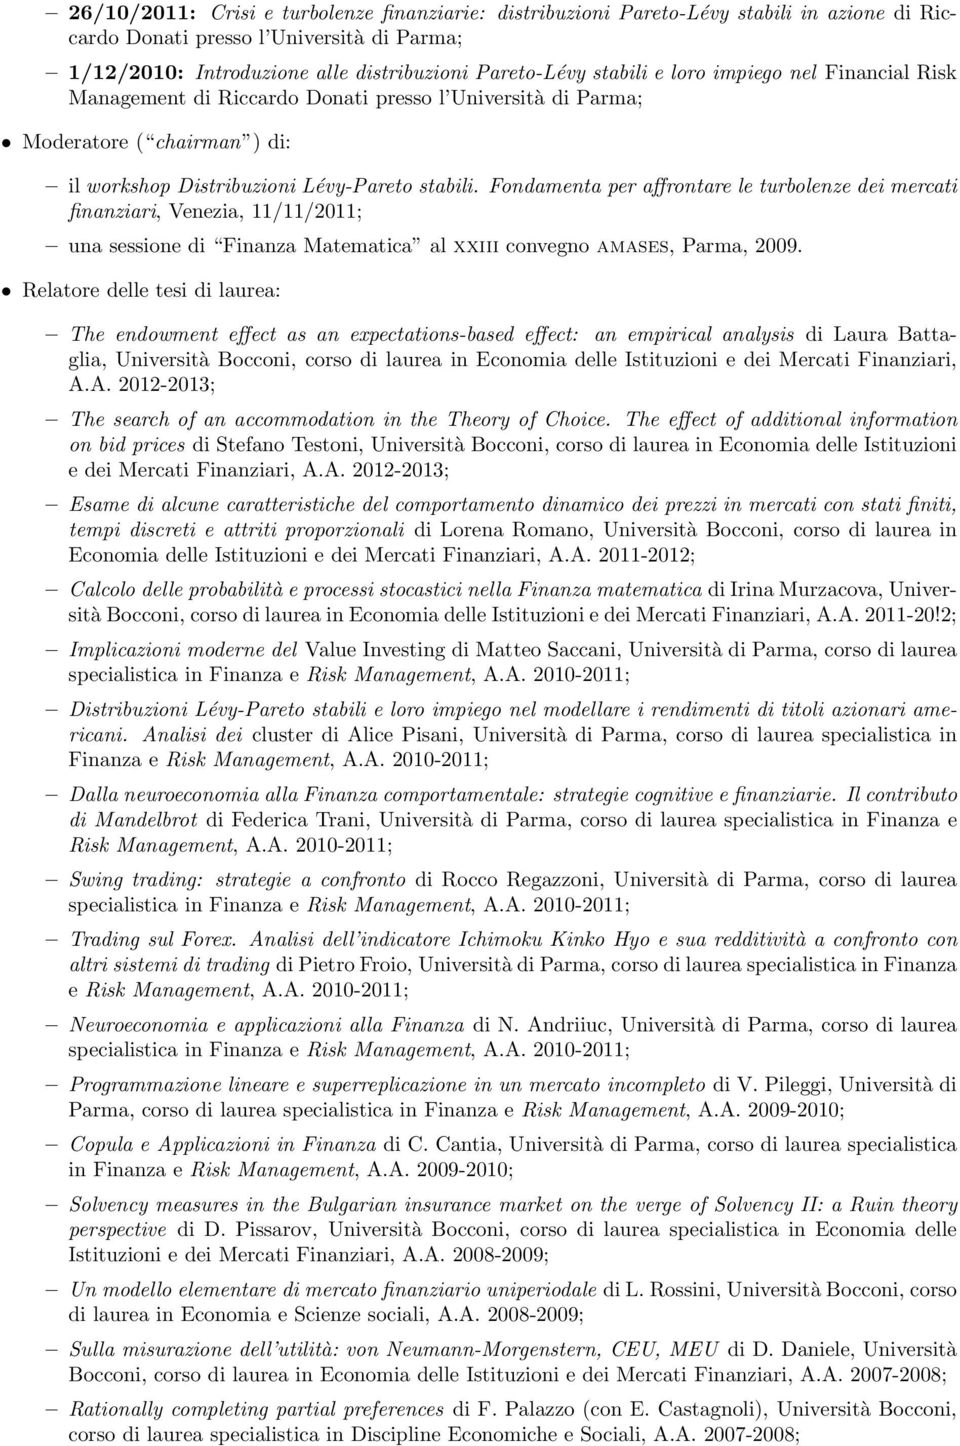 Fondamenta per affrontare le turbolenze dei mercati finanziari, Venezia, 11/11/2011; una sessione di Finanza Matematica al xxiii convegno amases, Parma, 2009.